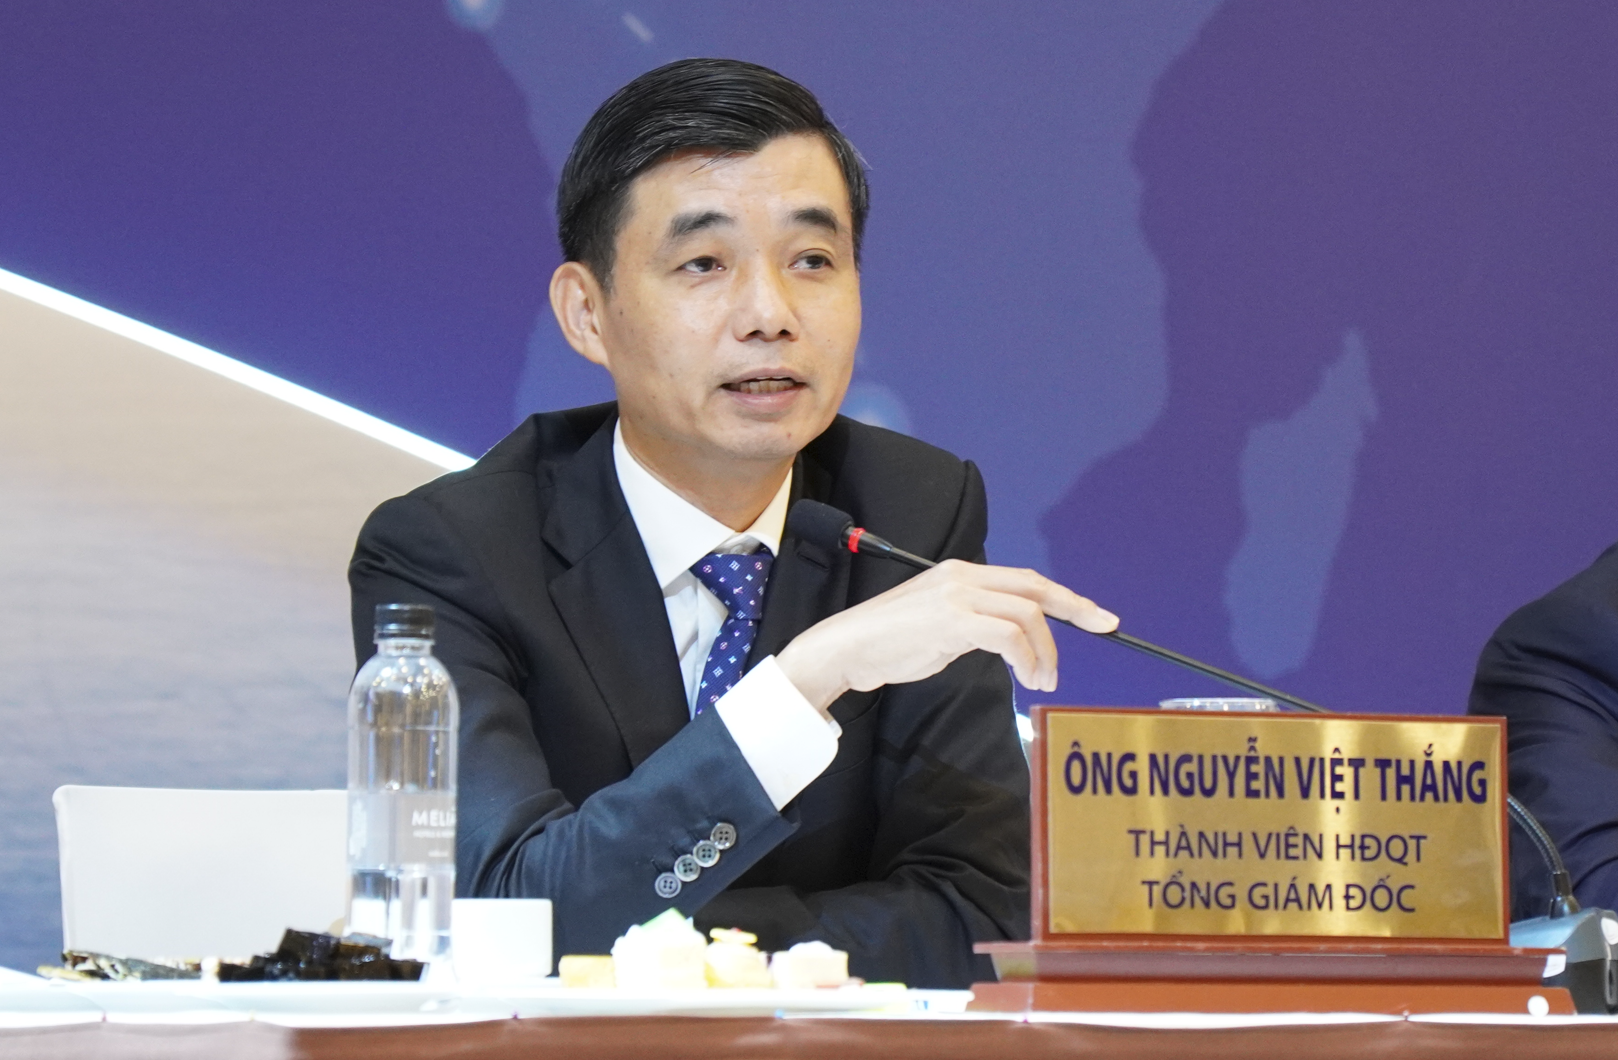 Ông Nguyễn Việt Thắng - CEO Hòa Phát